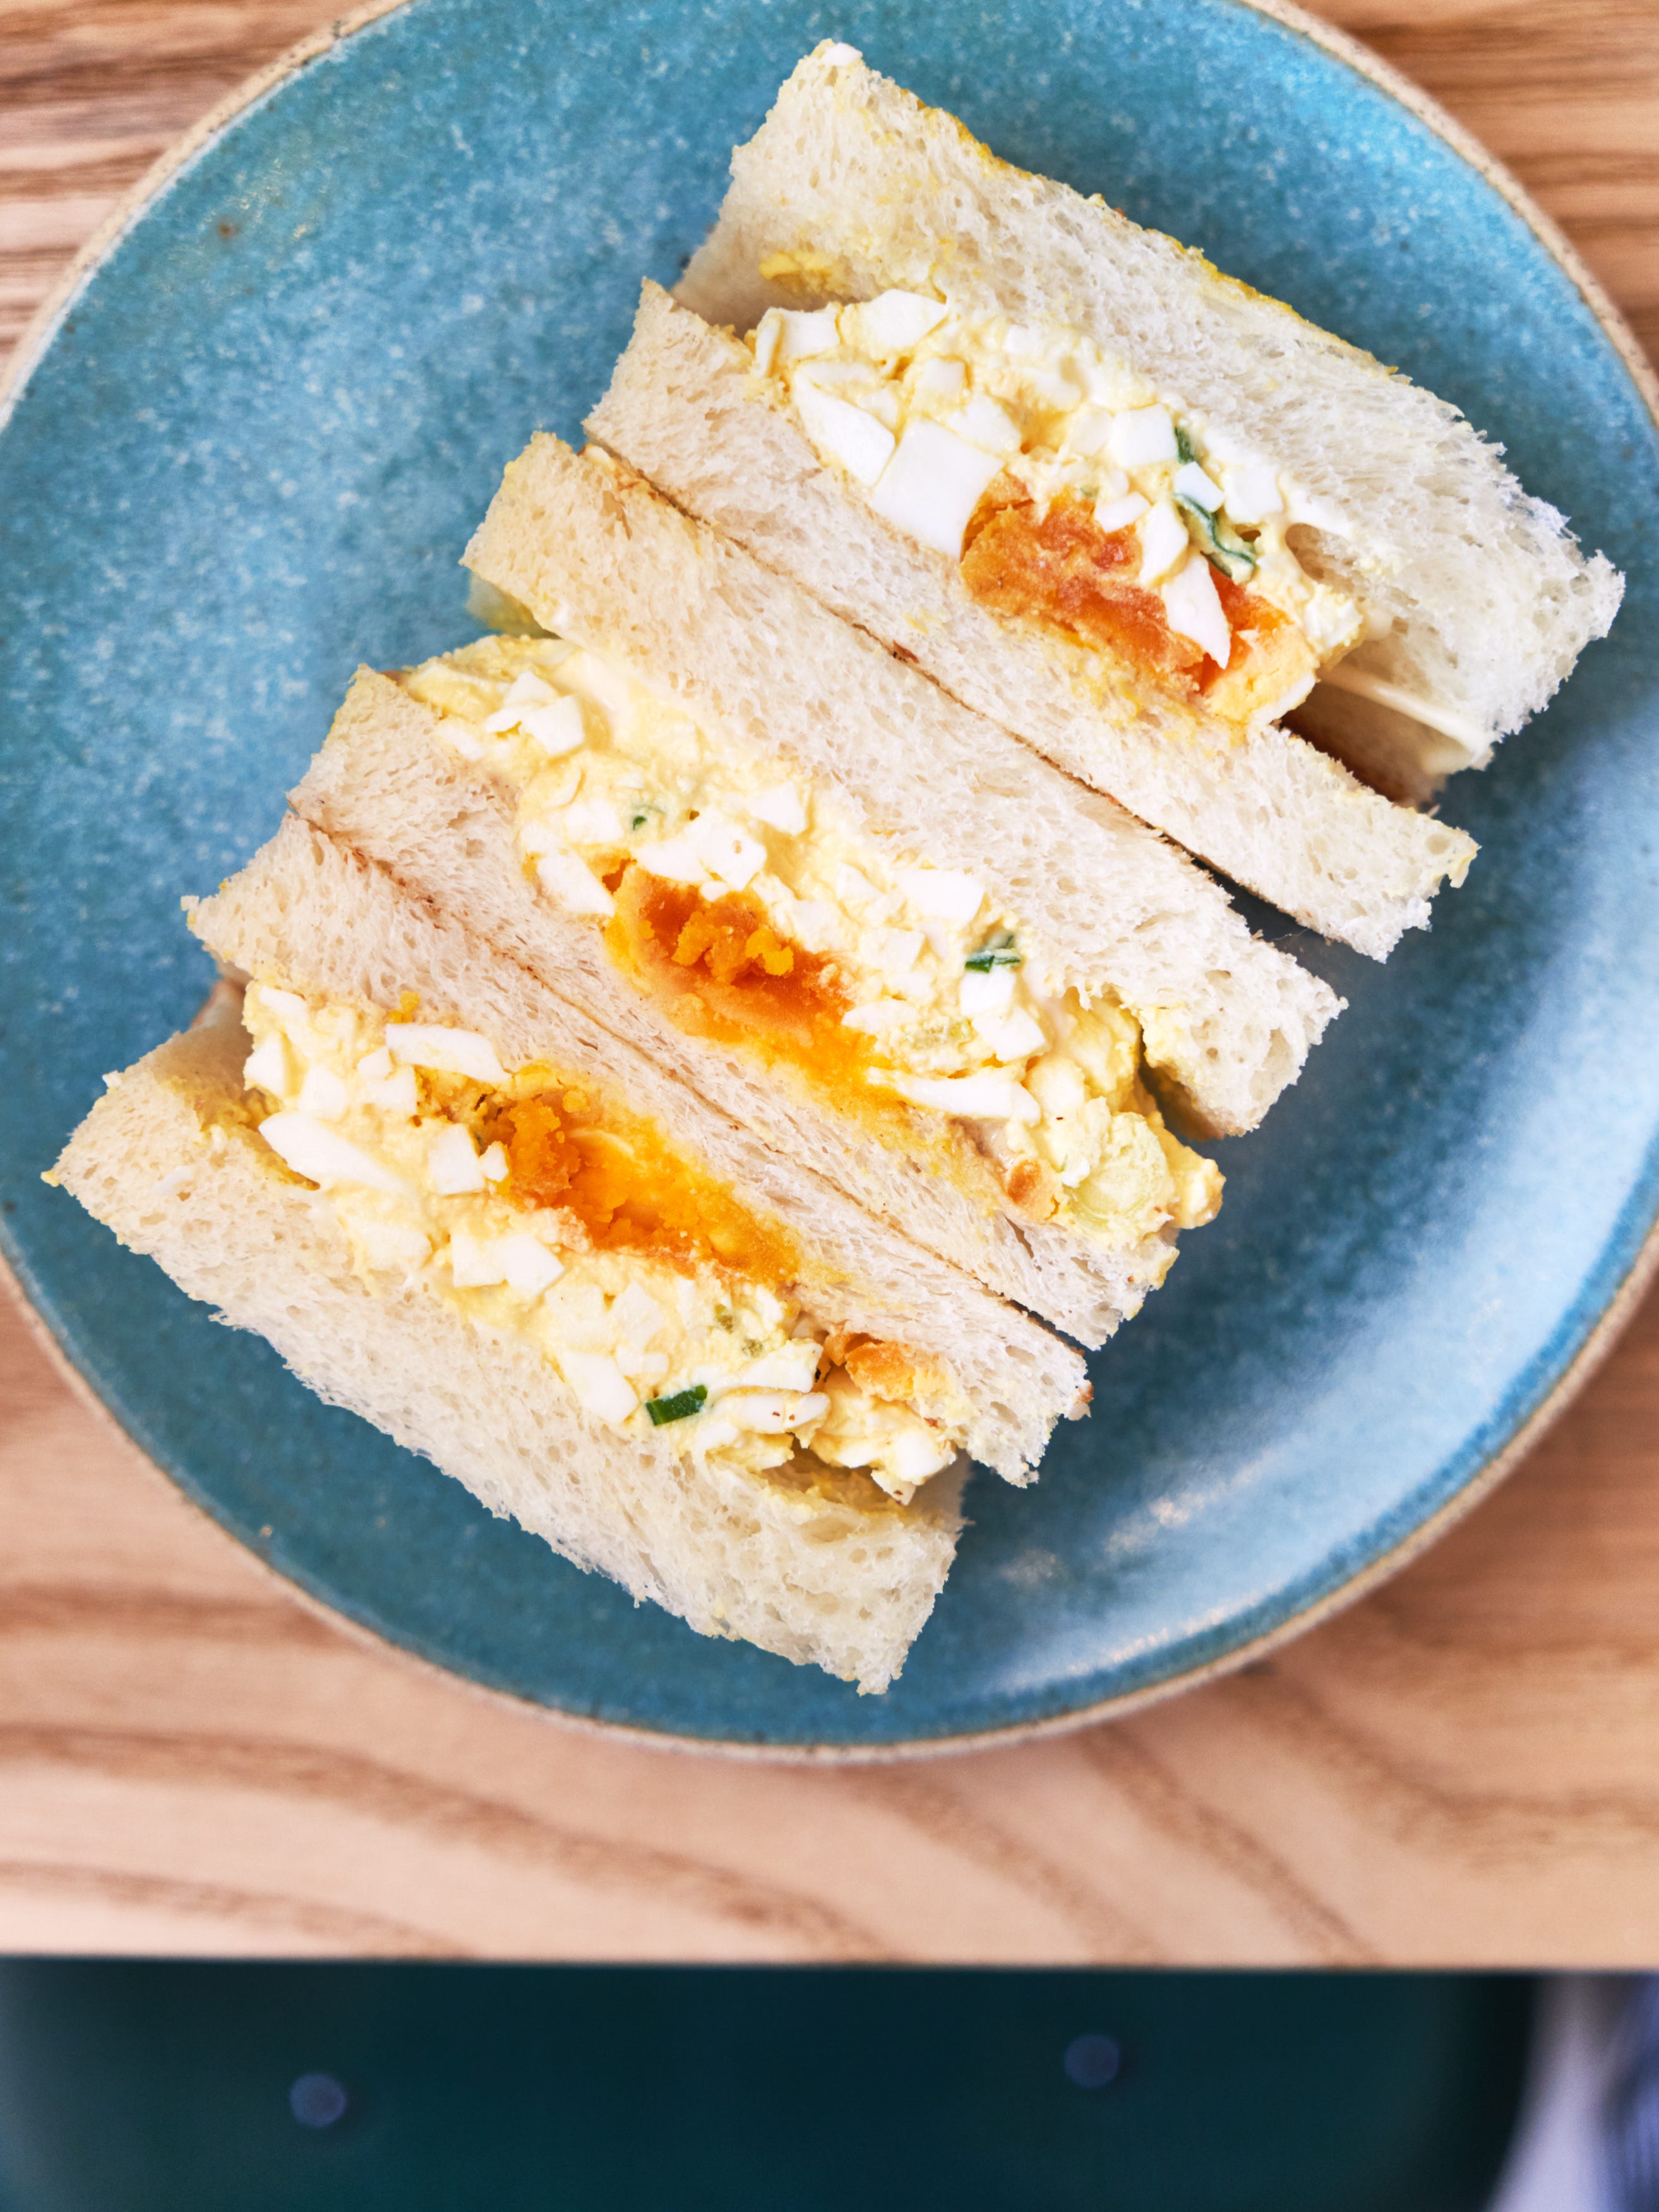 The Japanese Egg Salad Sandwich That’s Taken Over Instagram, Explained